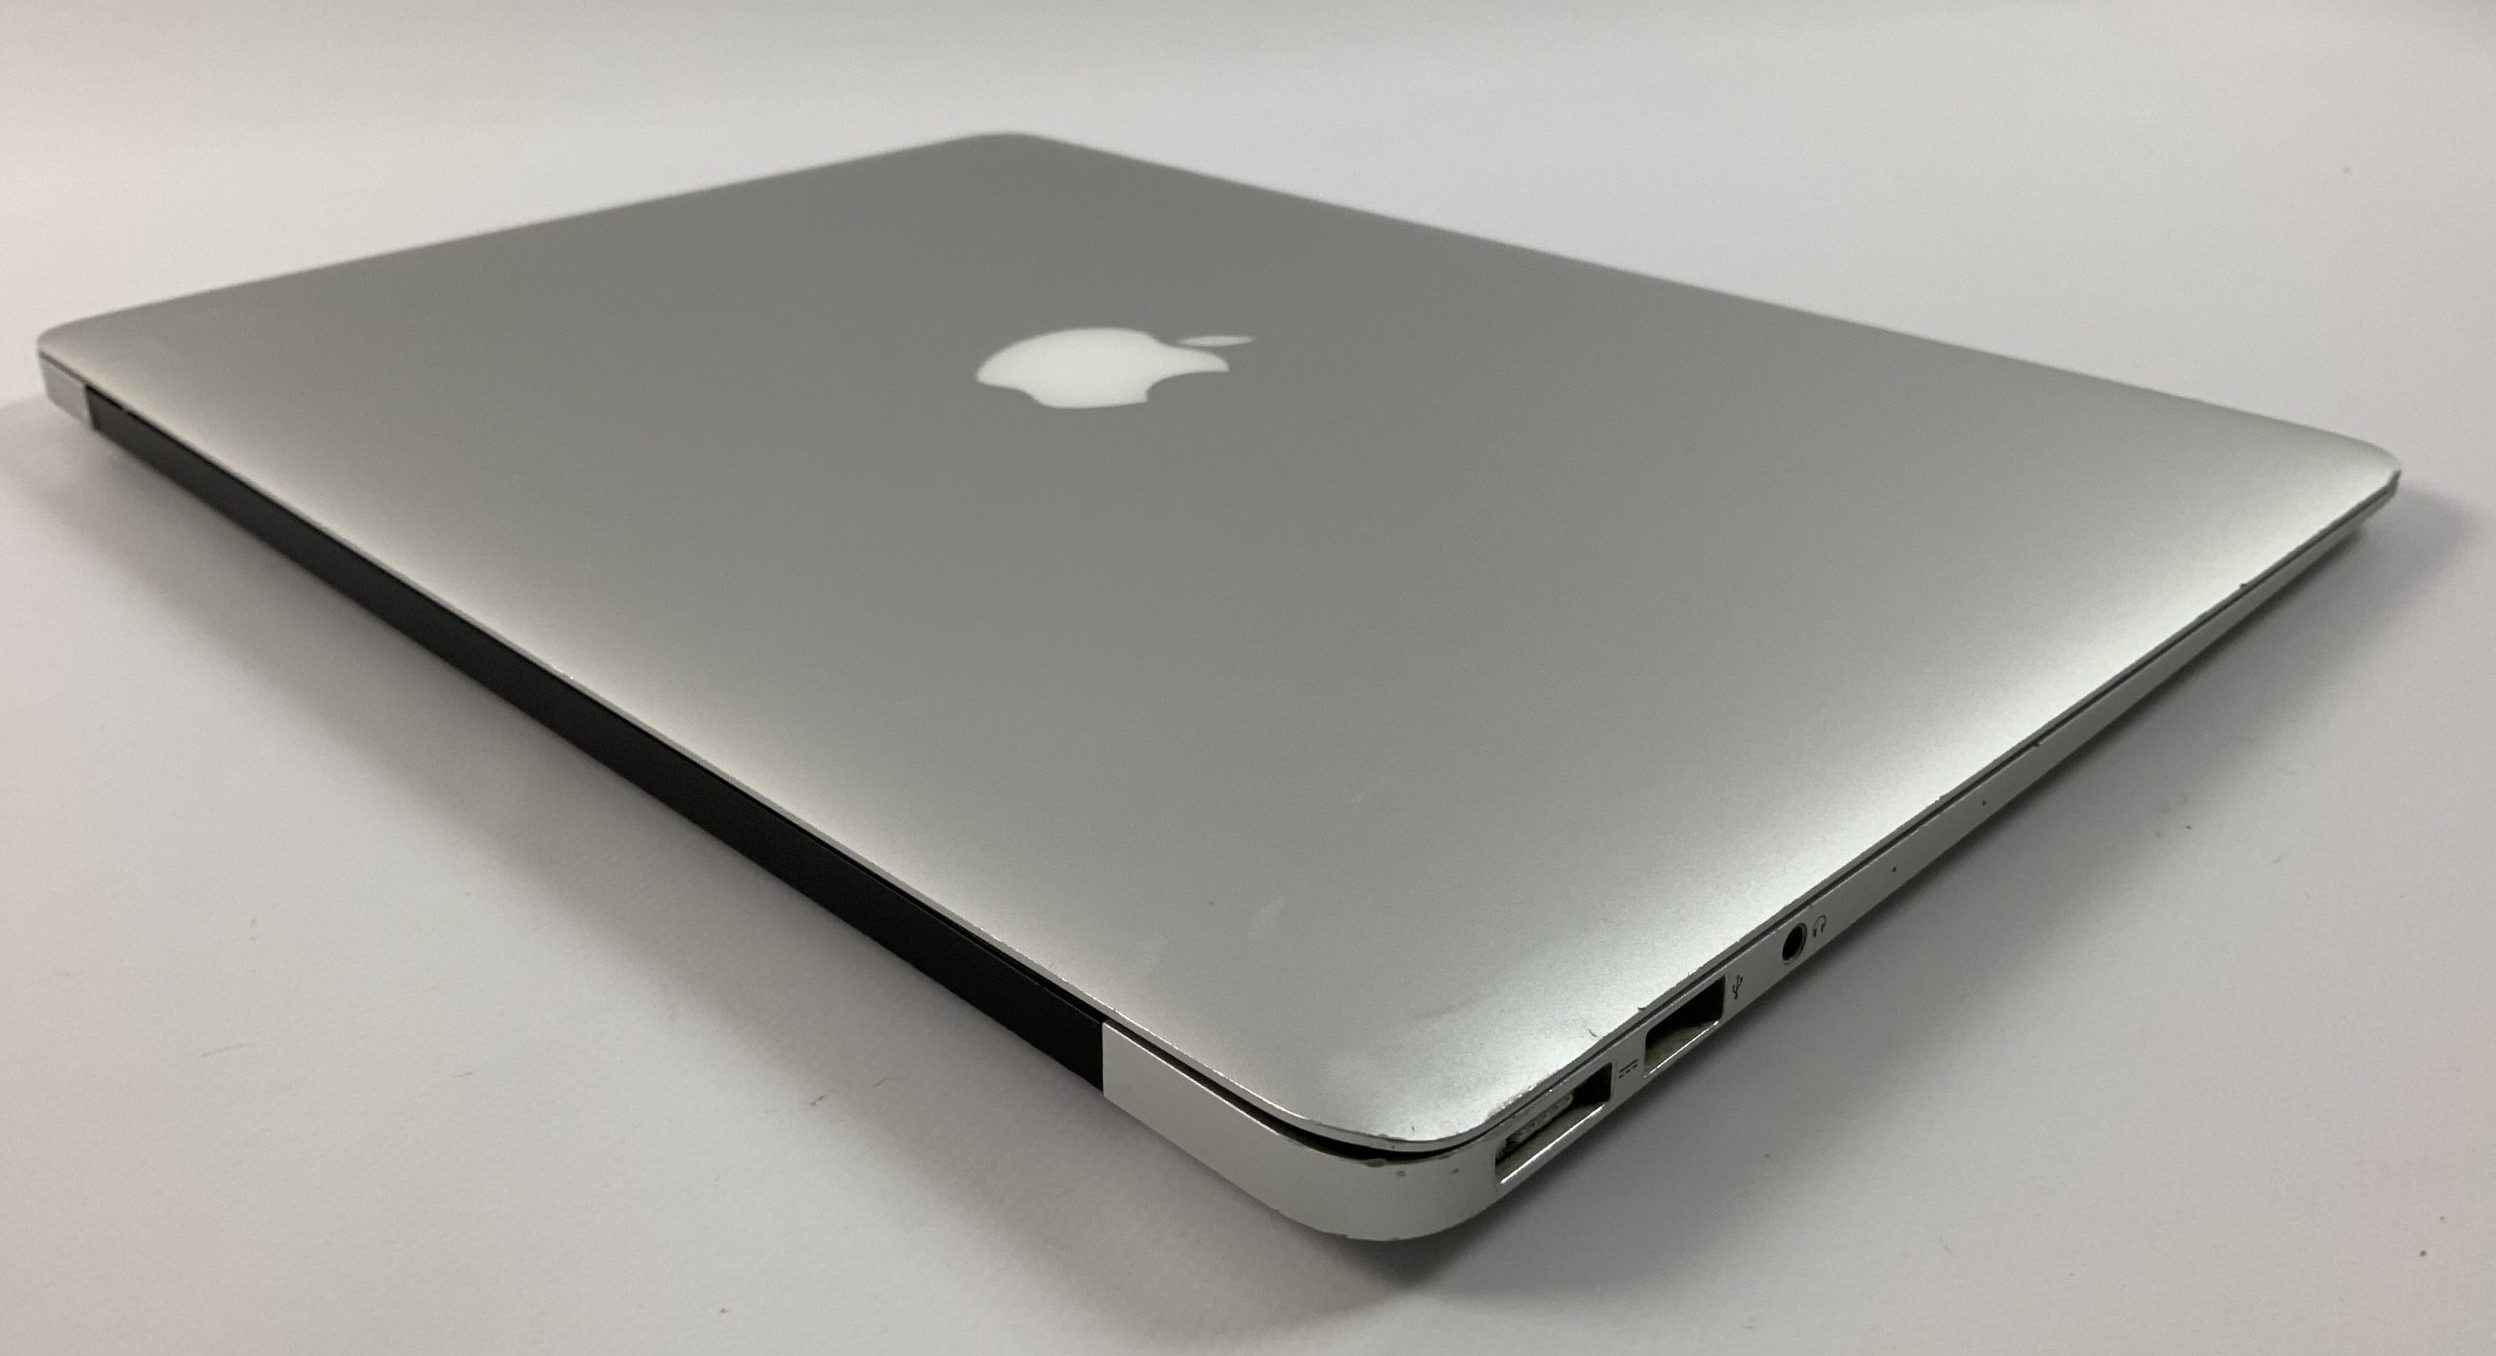 MacBook Air 13" Mid 2017 (Intel Core i5 1.8 GHz 8 GB RAM 256 GB SSD), Intel Core i5 1.8 GHz, 8 GB RAM, 256 GB SSD, immagine 4